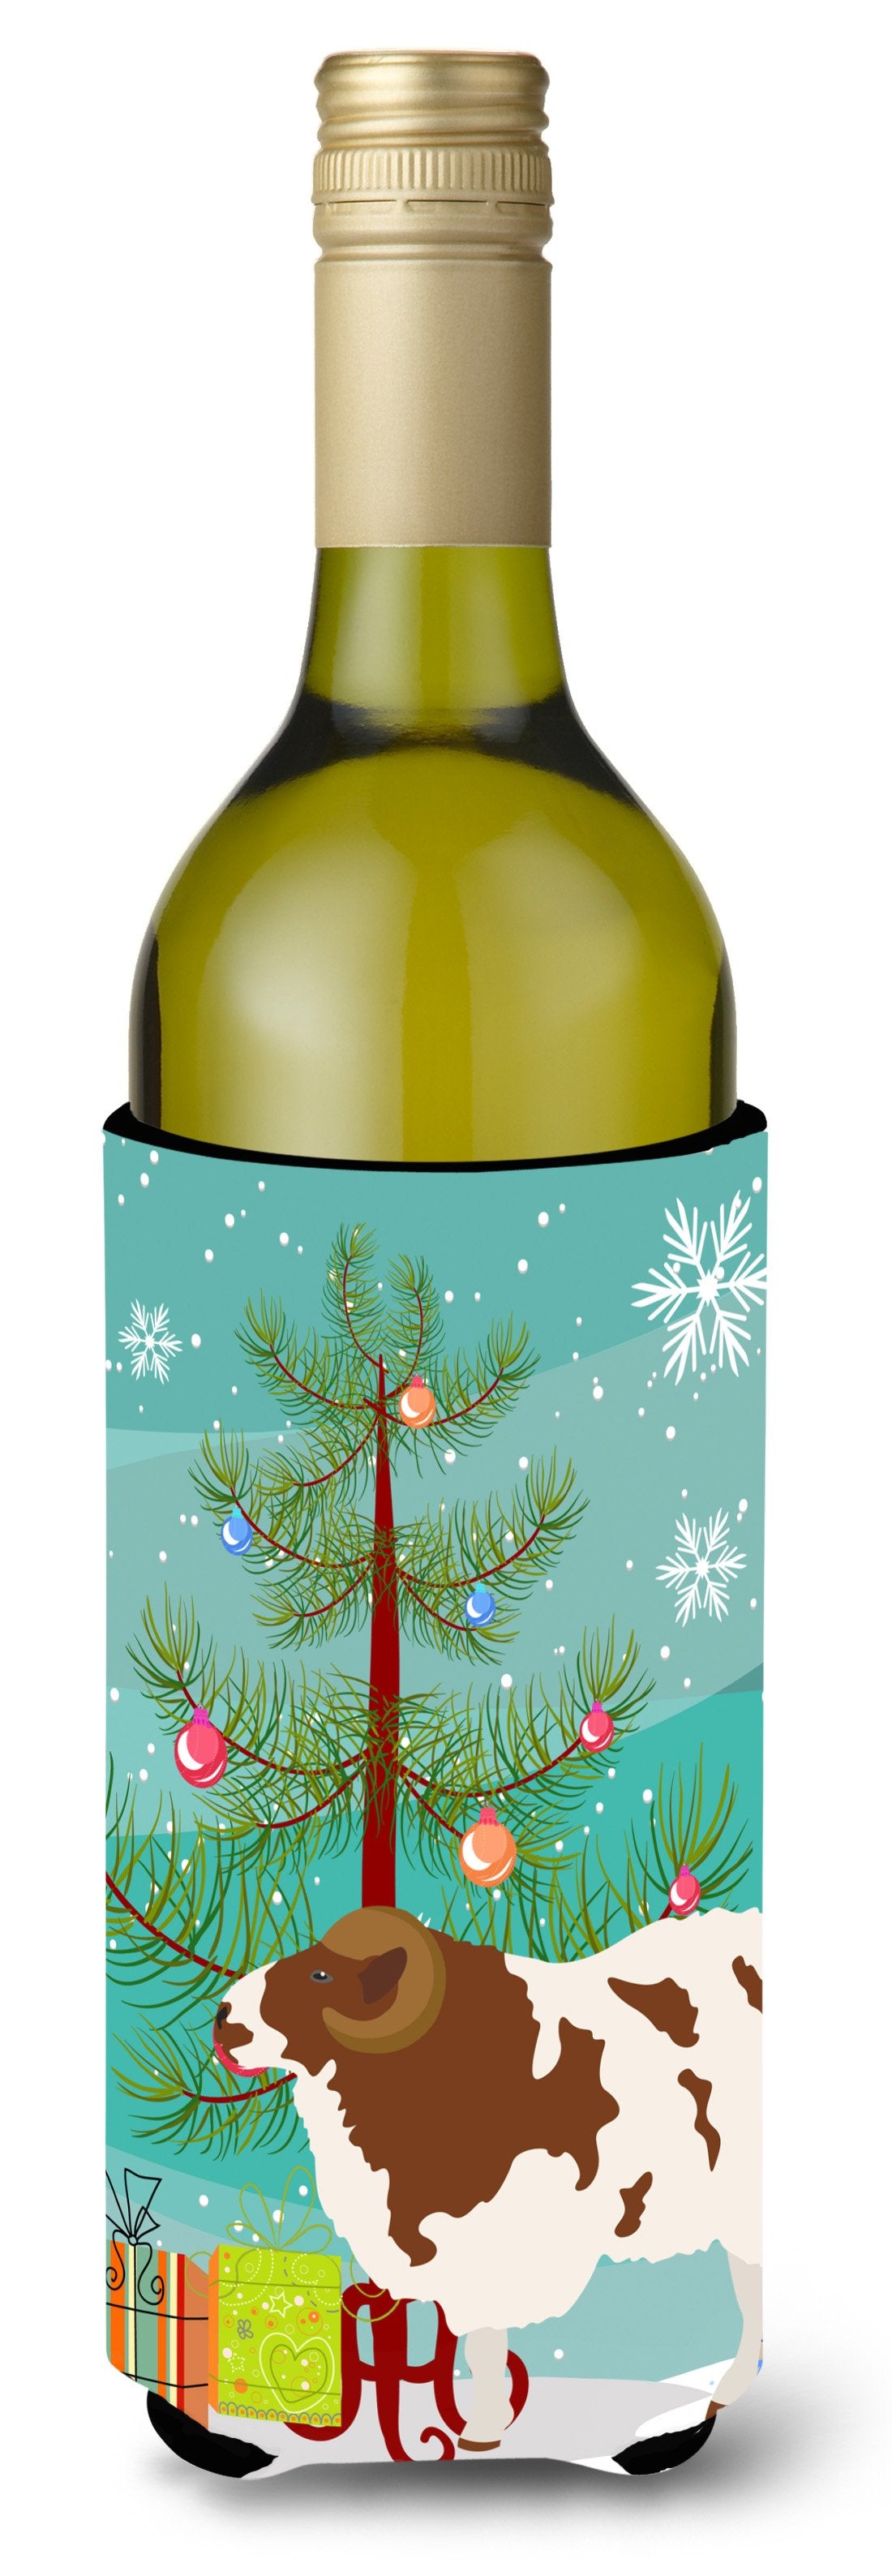 Jacob Sheep Christmas Wine Bottle Beverge Insulator Hugger BB9342LITERK by Caroline's Treasures